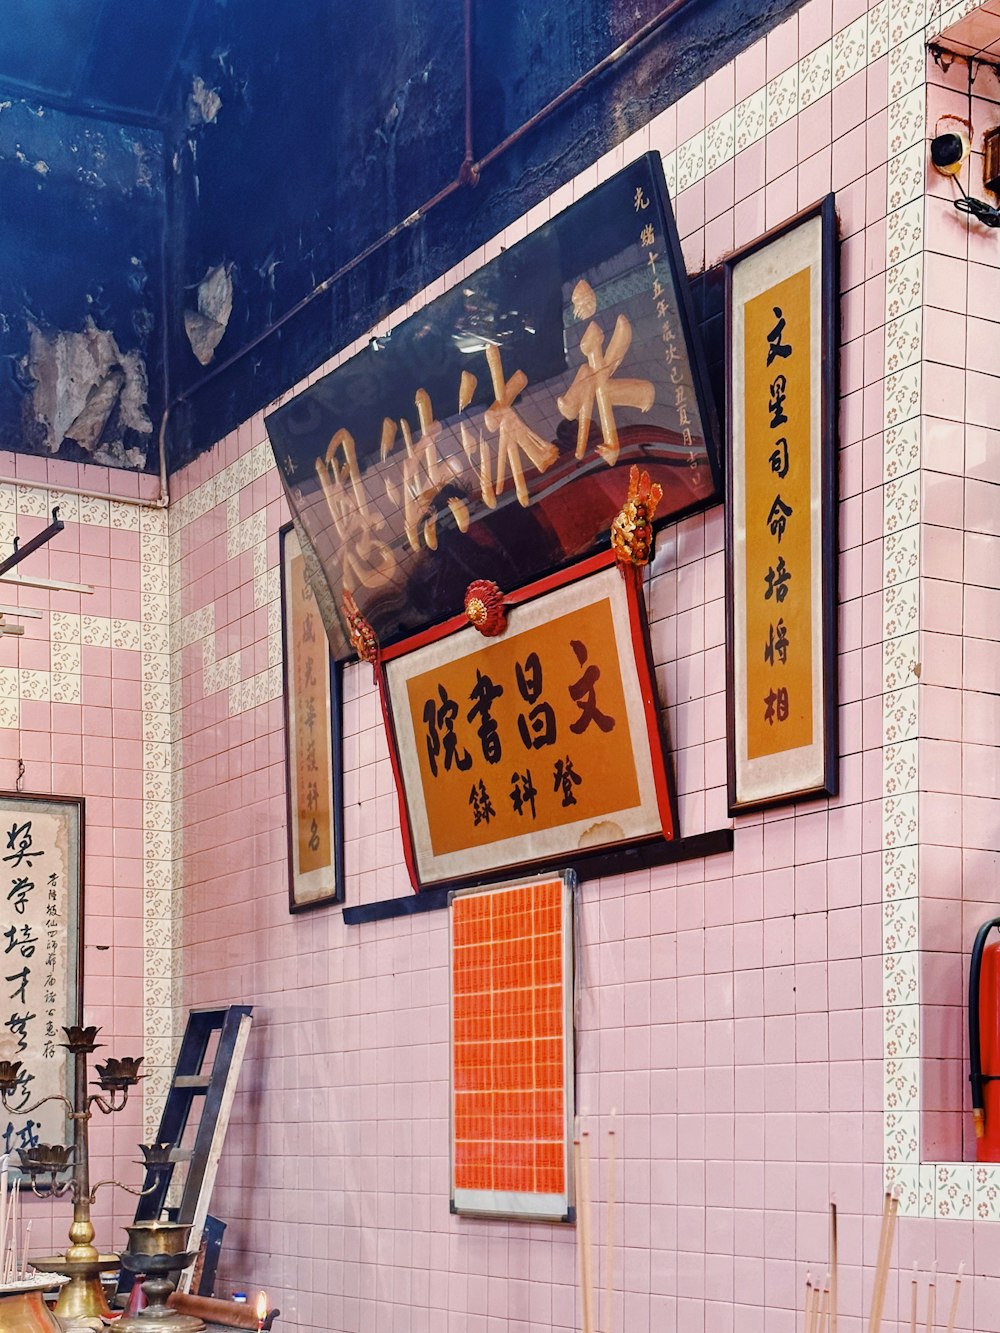 eine rosa geflieste Wand mit asiatischer Schrift darauf